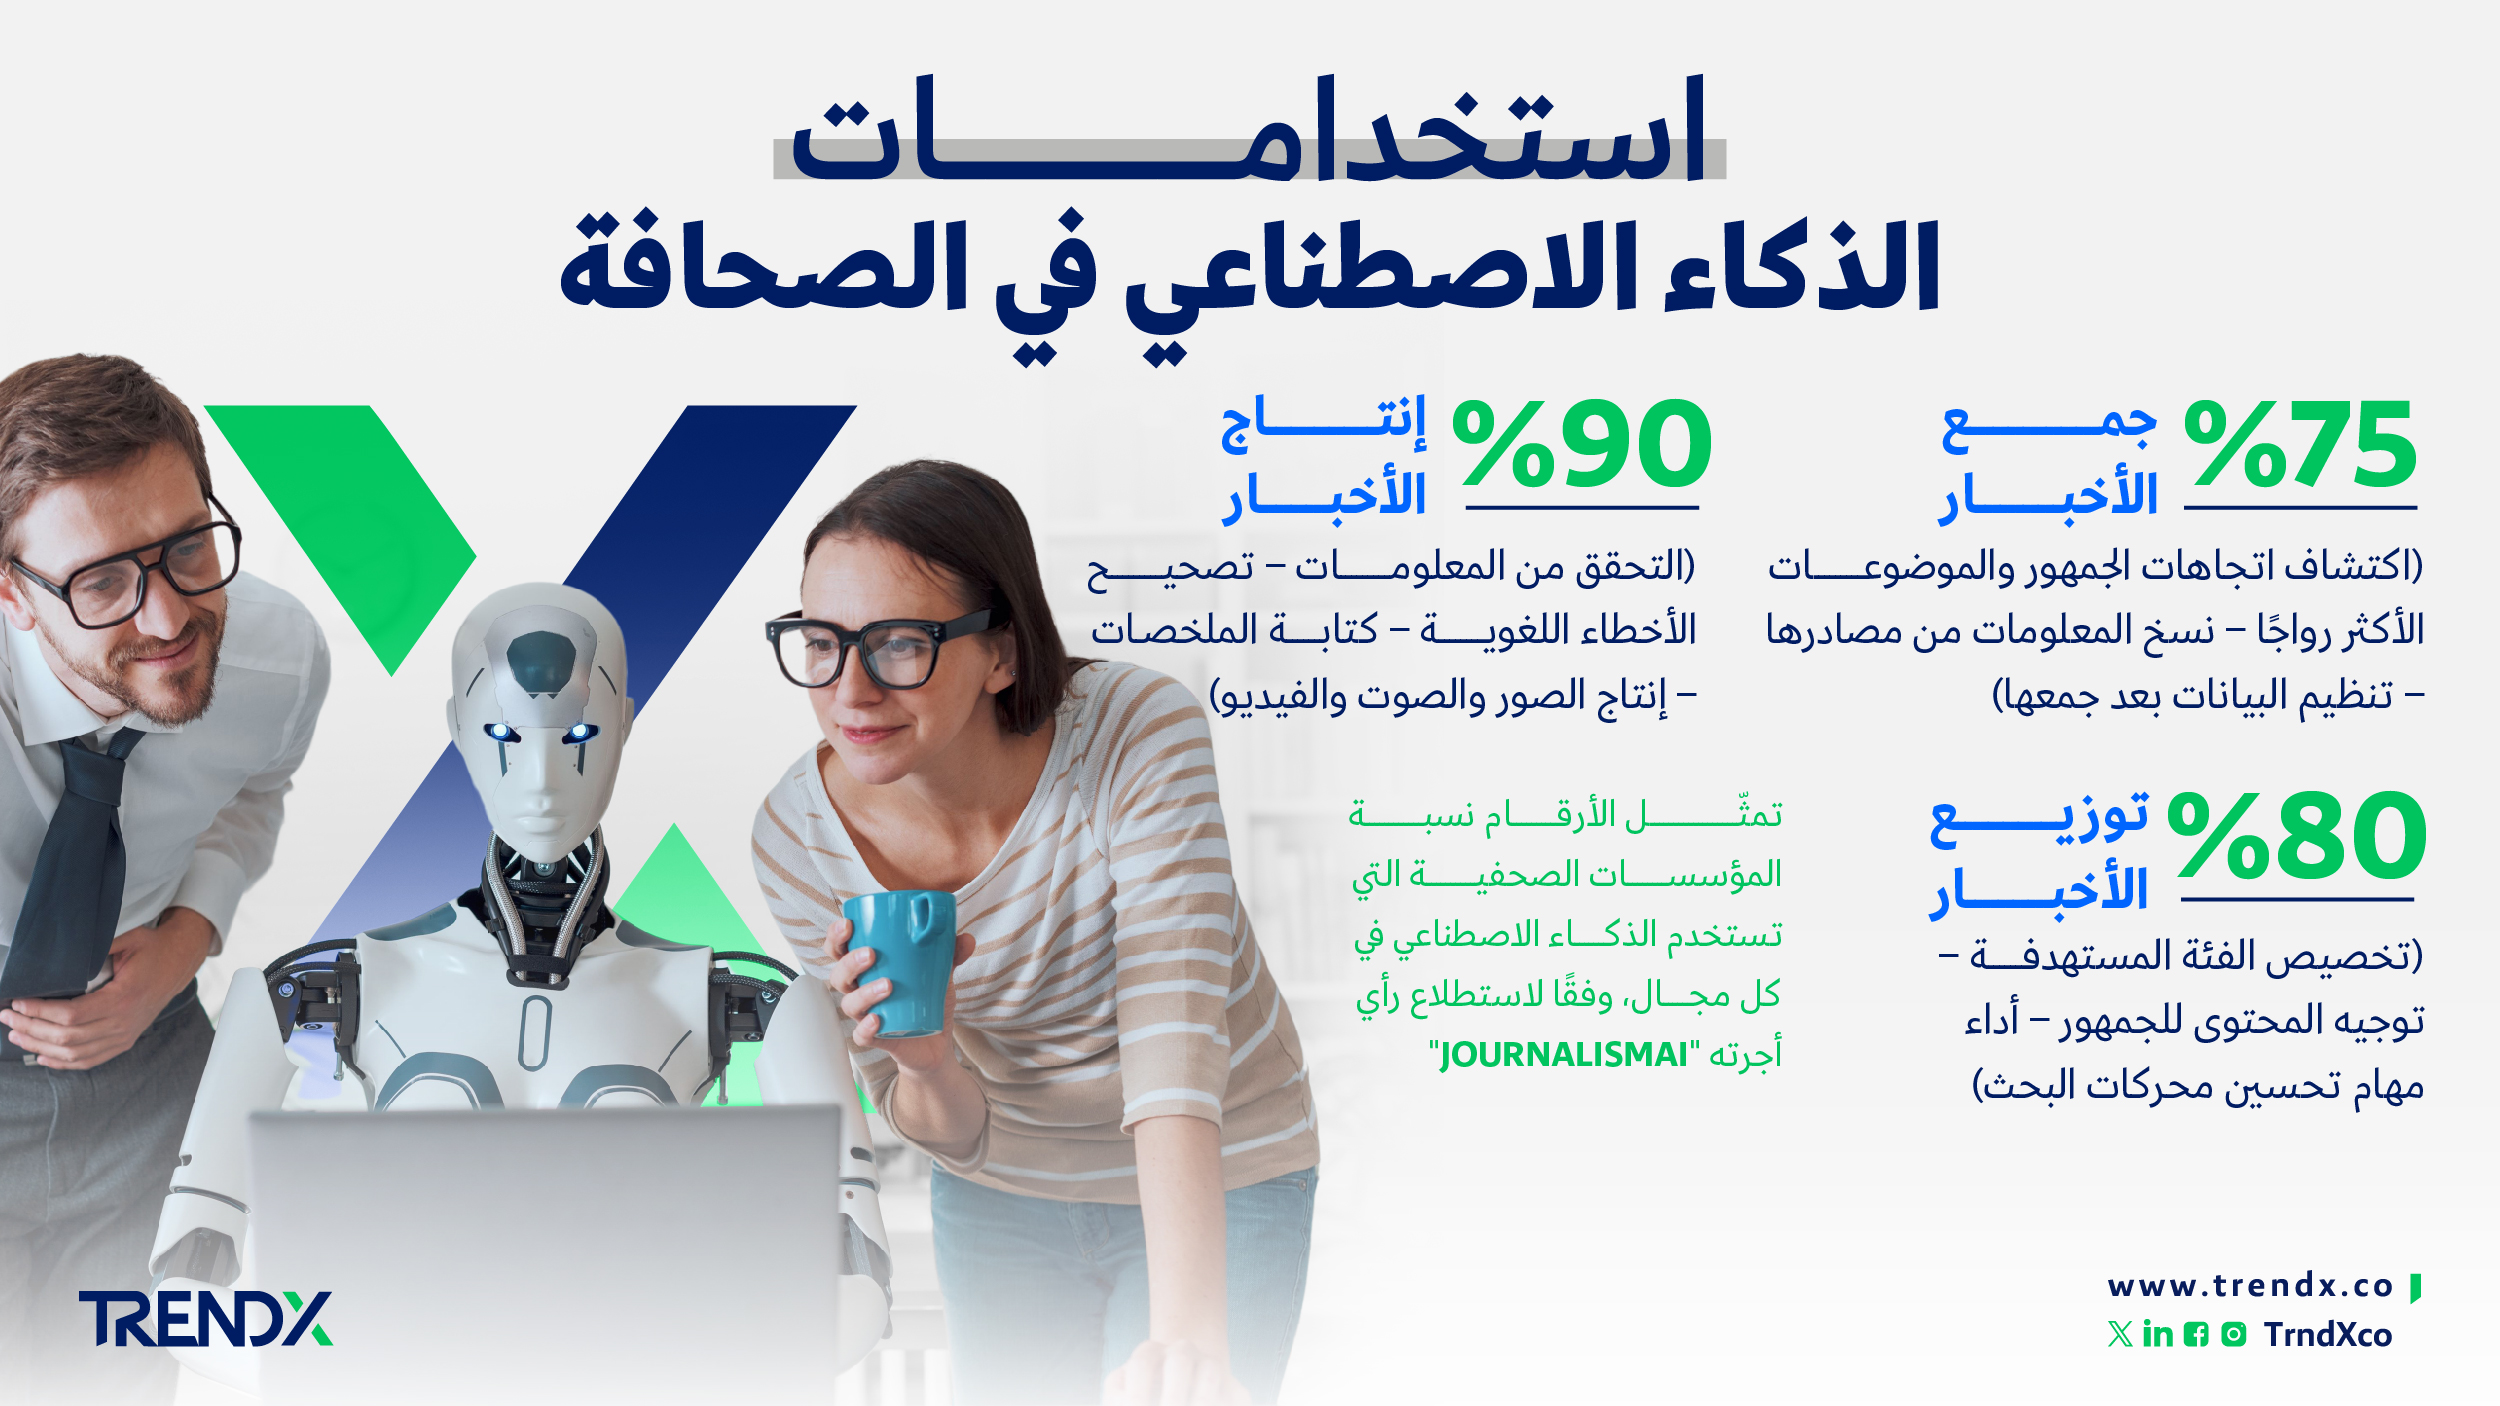 استخدامات الذكاء الاصطناعي في الصحافة ثروات السعوديين في الفترة من عام 2000 إلى 2022 01